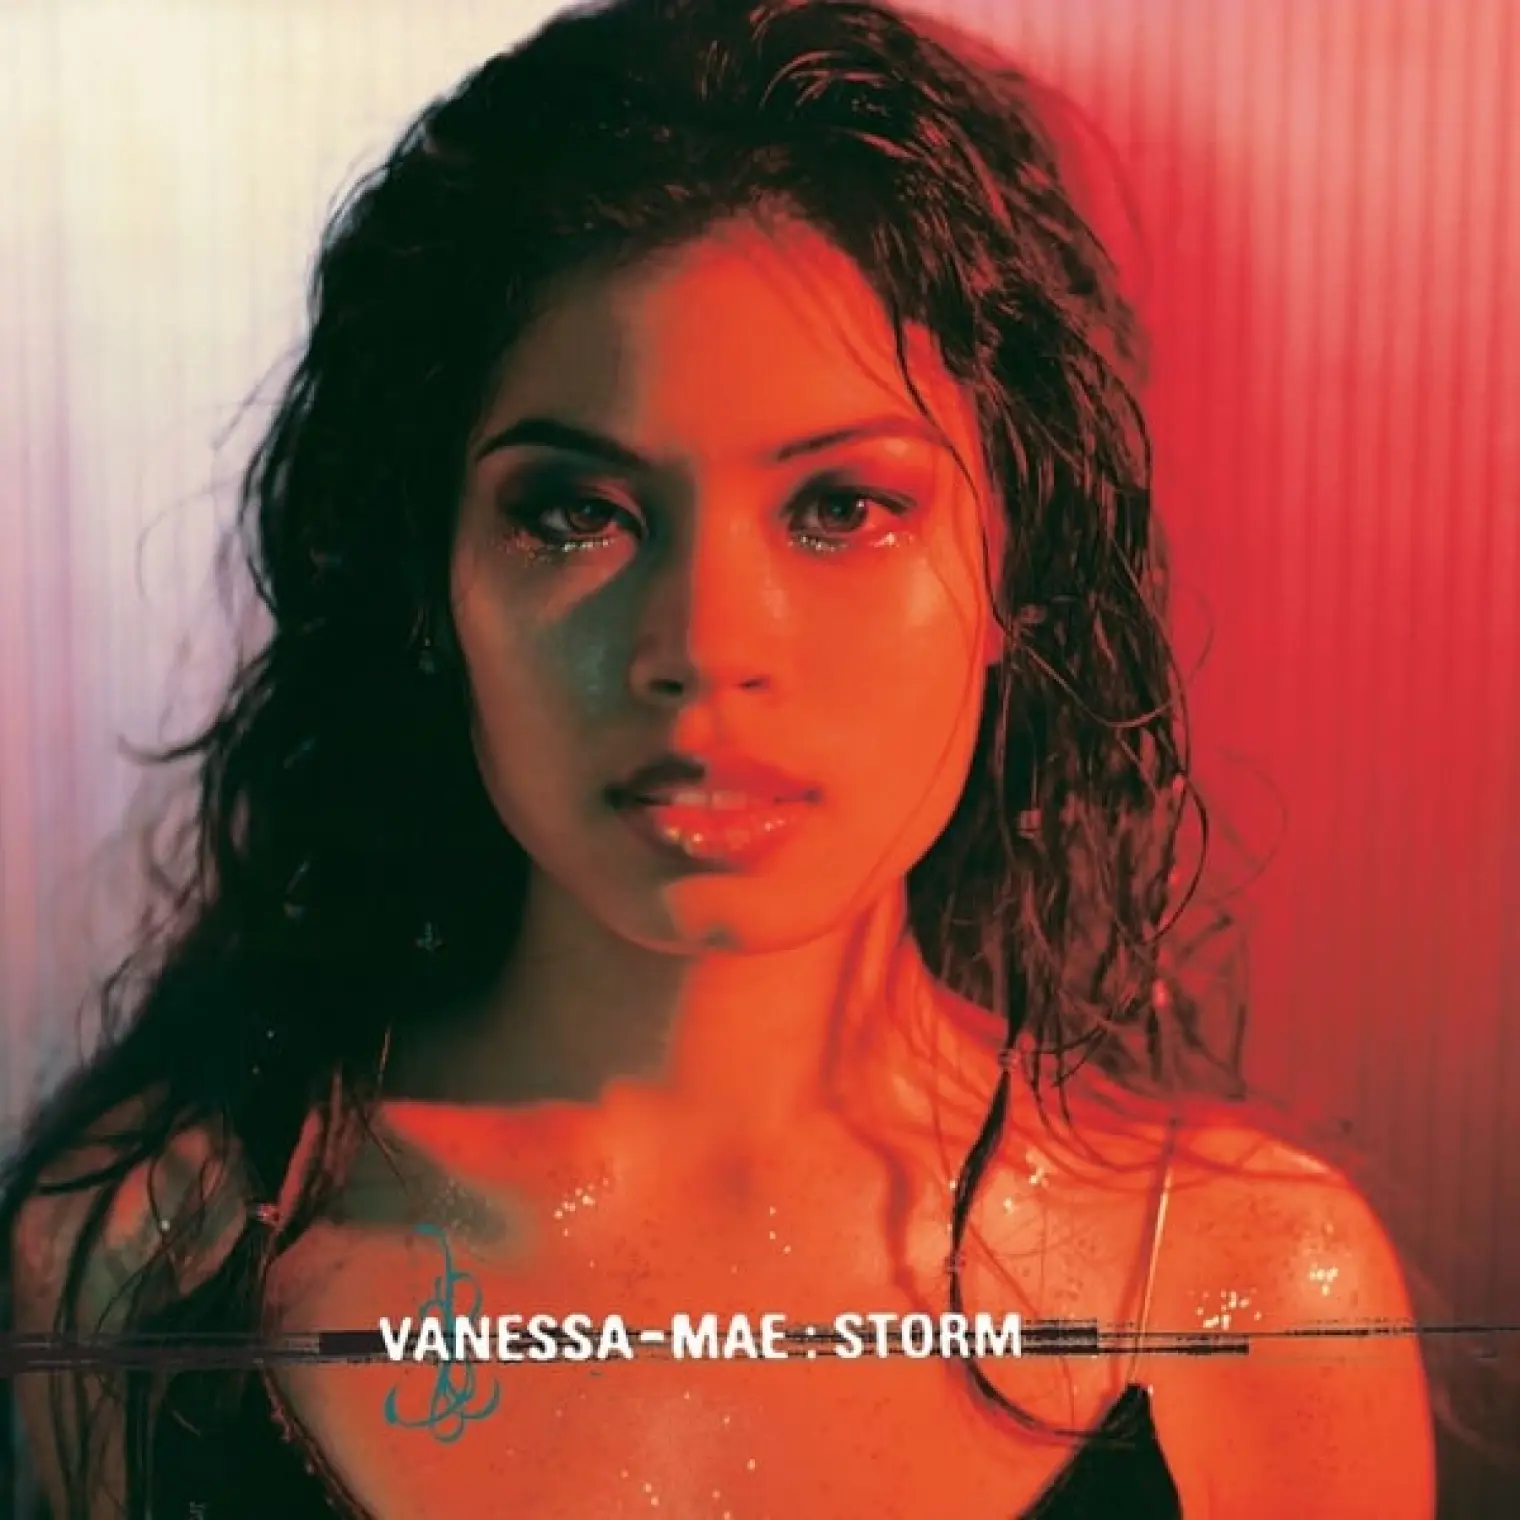 Storm -  Vanessa-Mae 